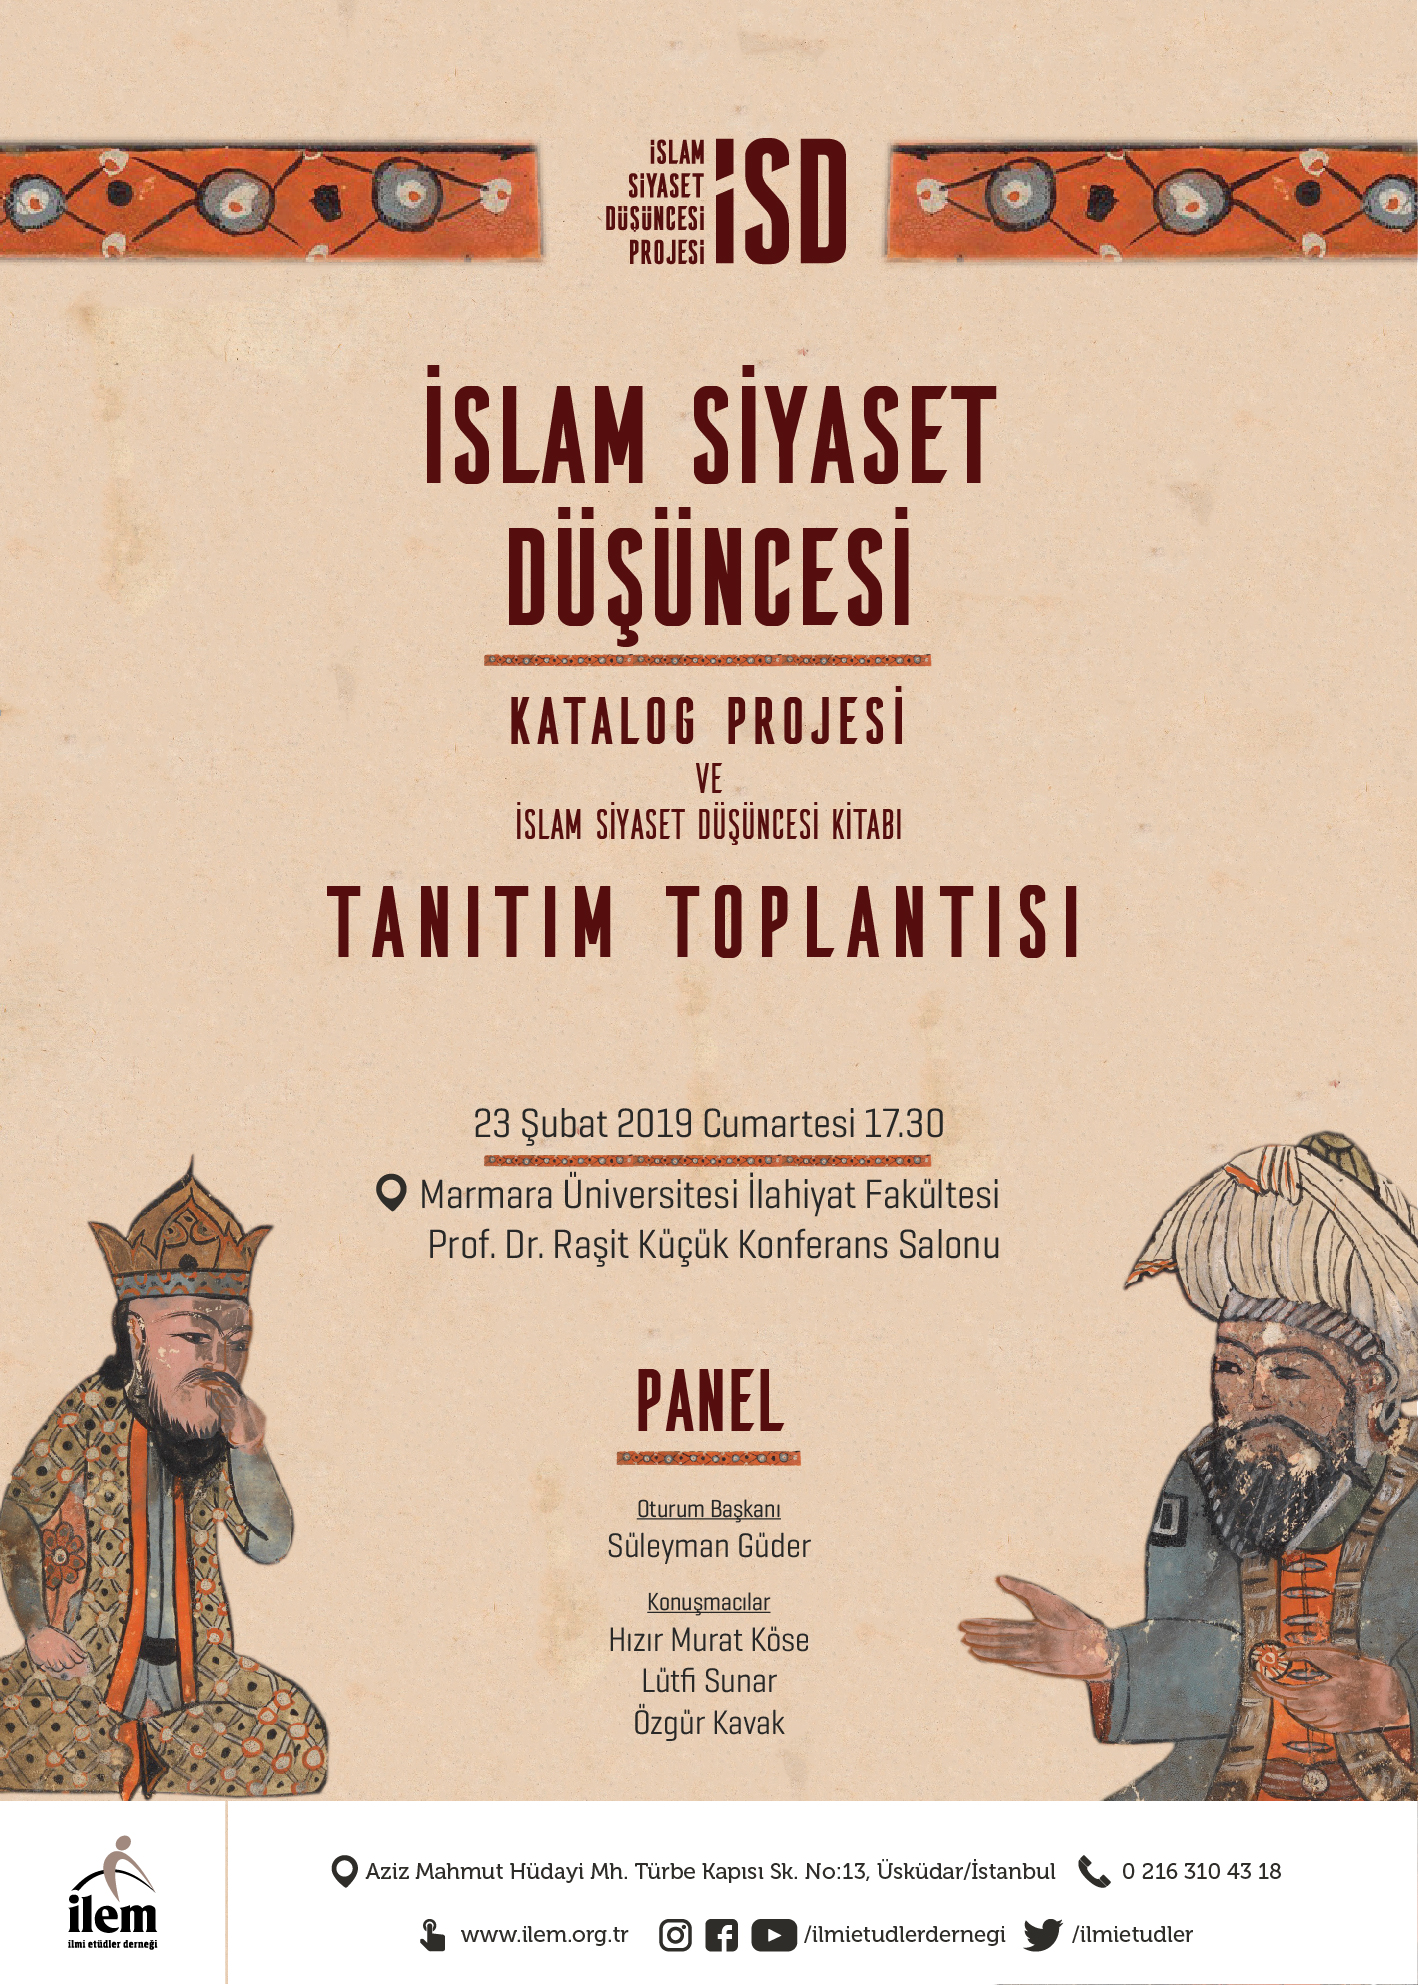 İslam Siyaset Düşüncesi Katalog Projesi ve İslam Siyaset Düşüncesi Kitabı Tanıtım Toplantısı